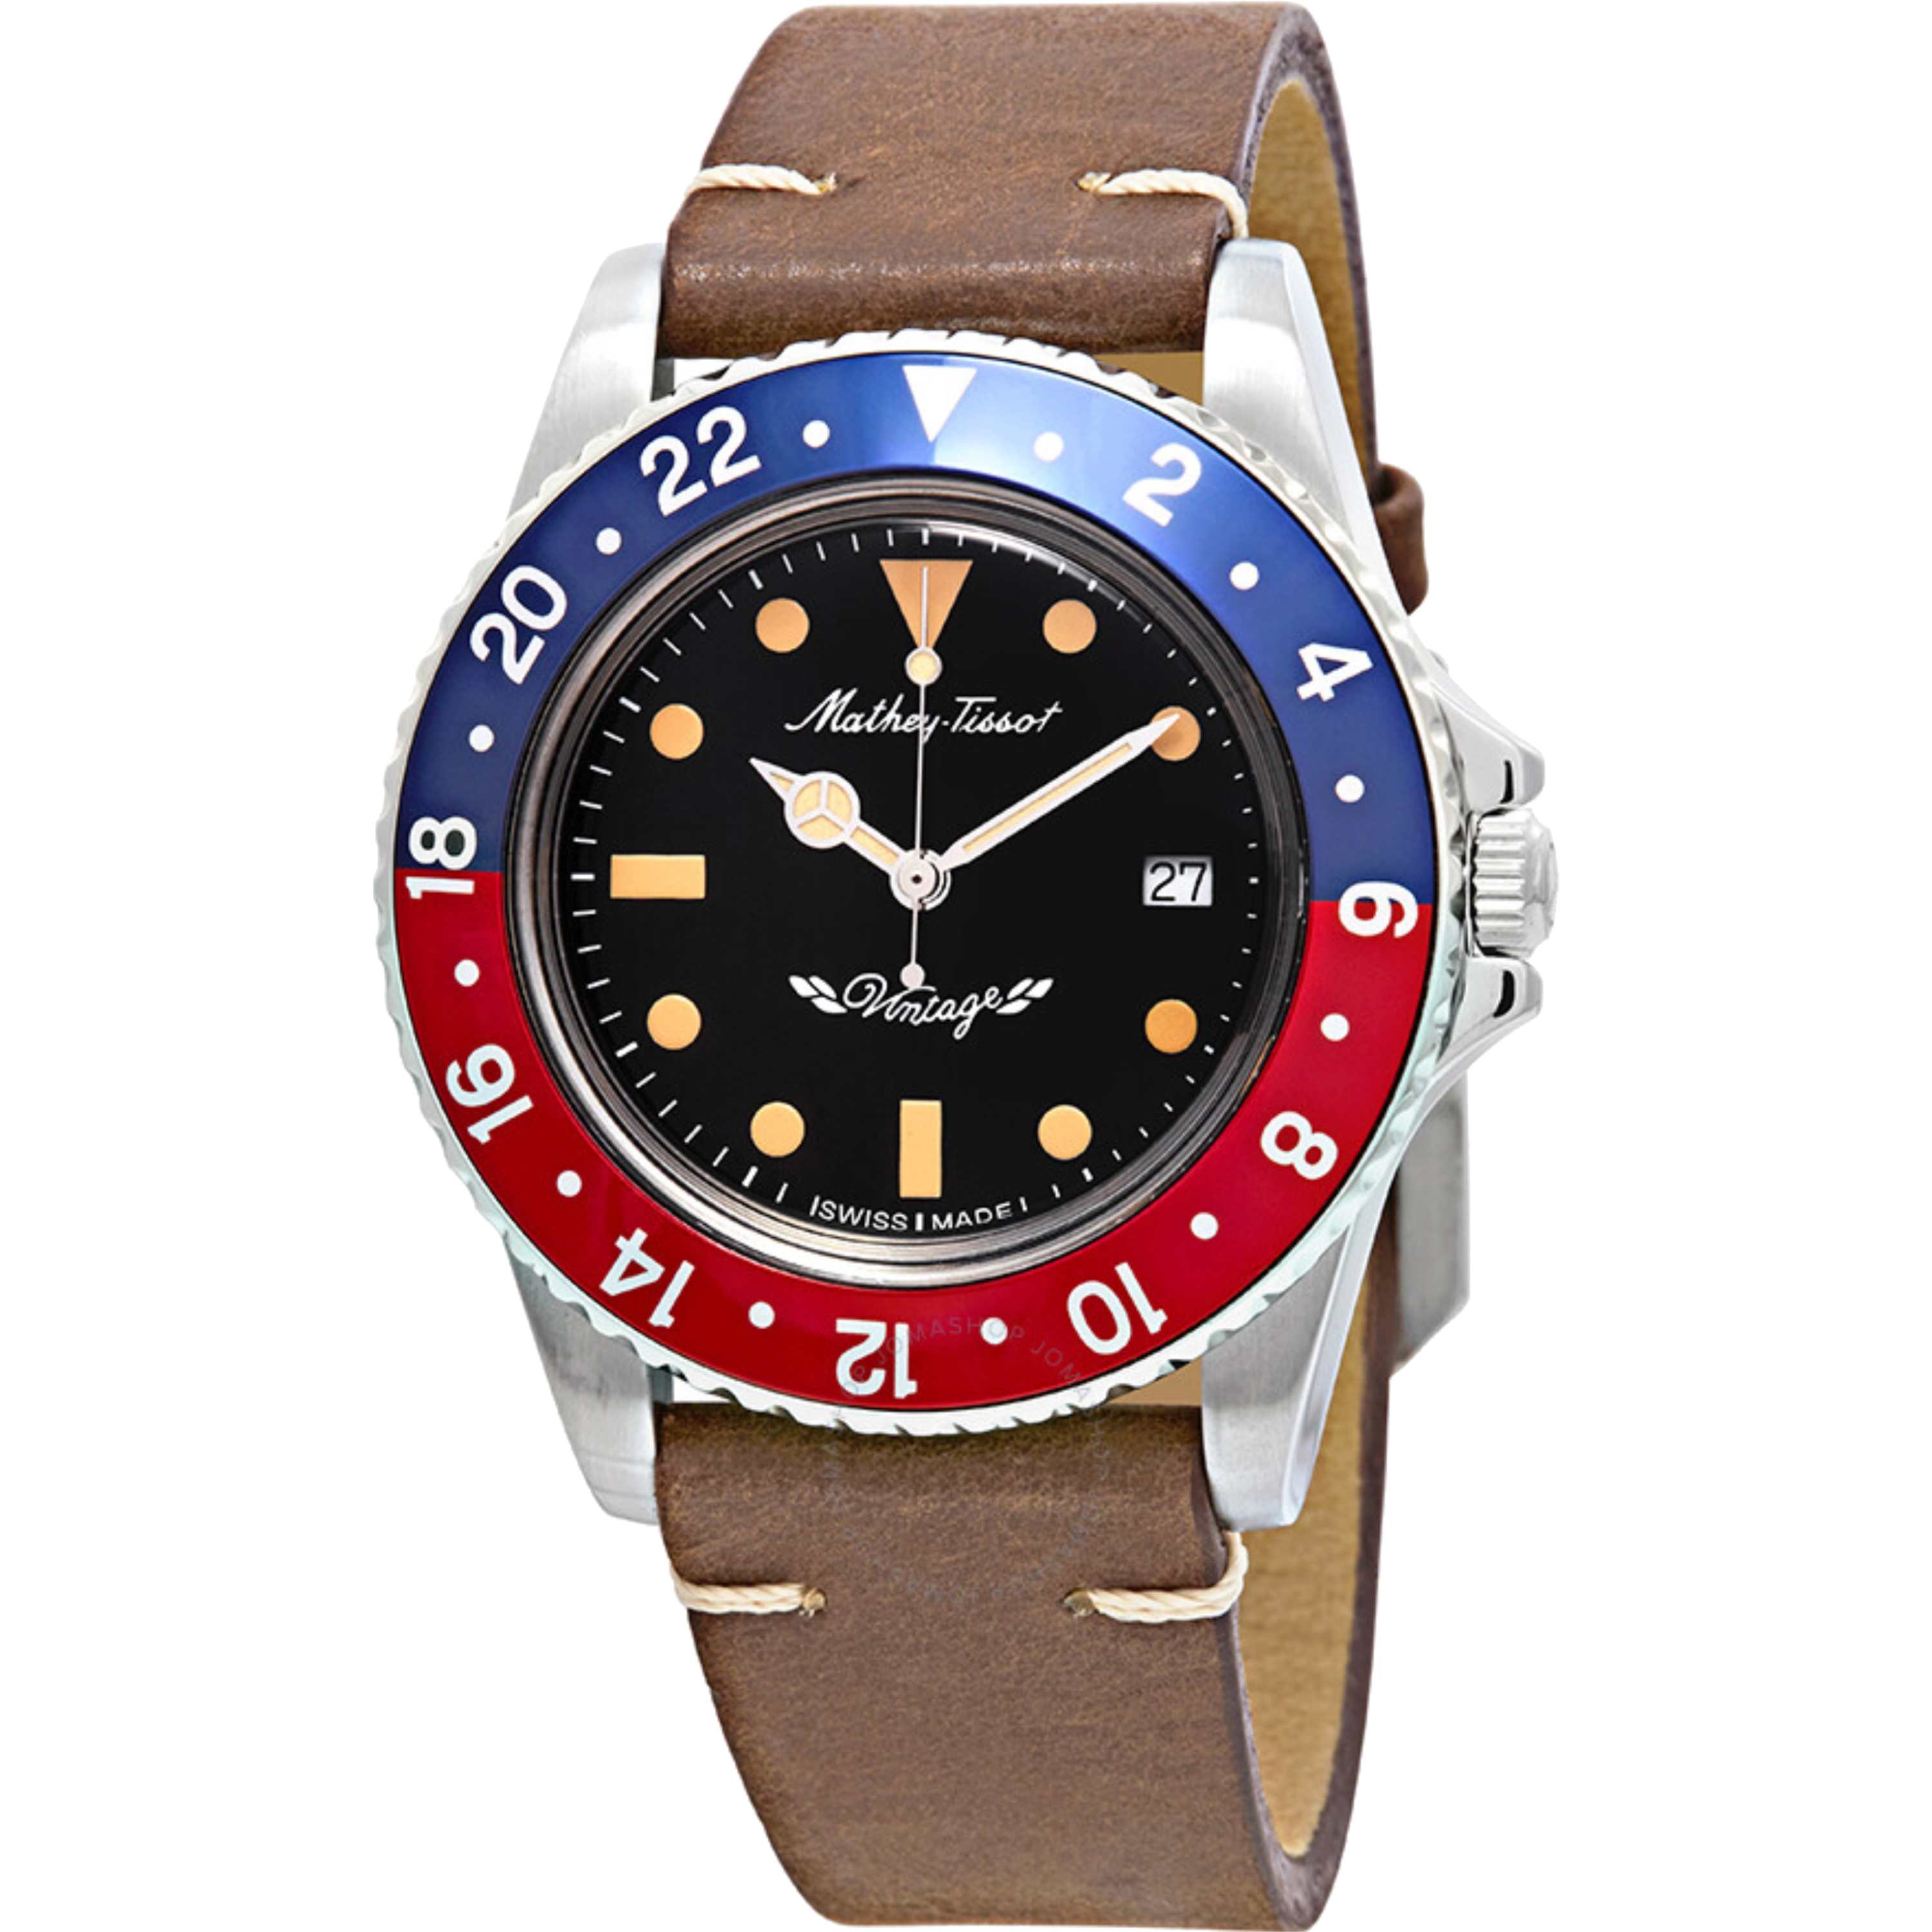 שעון יד לגבר Mathey Tissot H900ALR 40mm צבע חום - אחריות לשנה ע"י היבואן